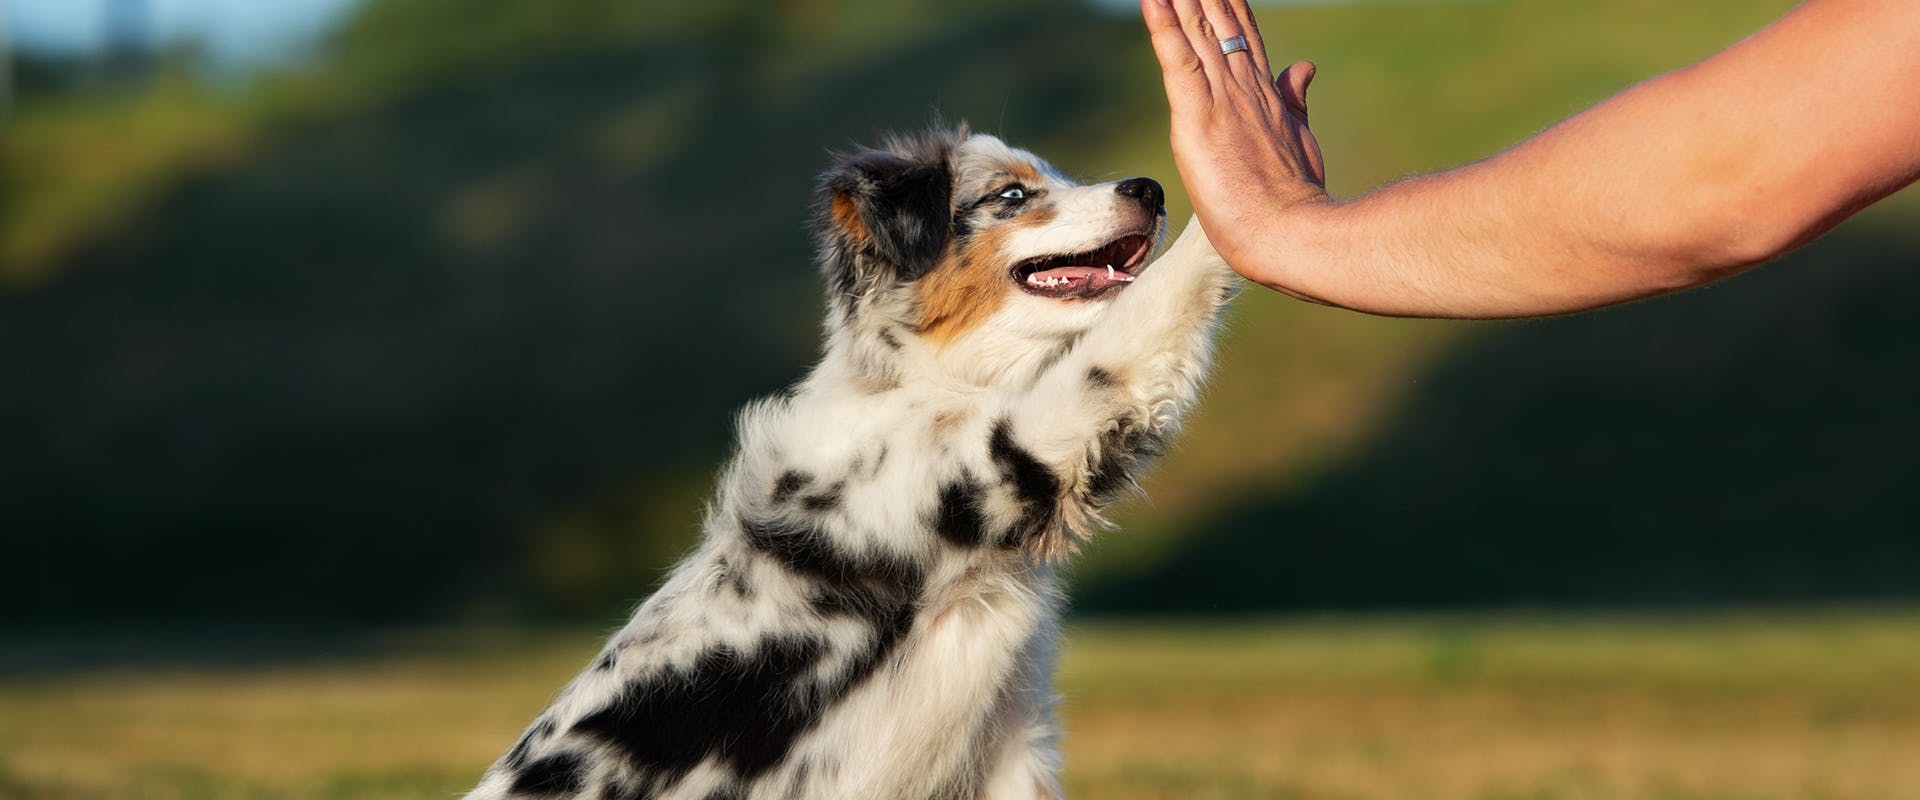 An Australian Shepherd dog high-fiving a person's hand